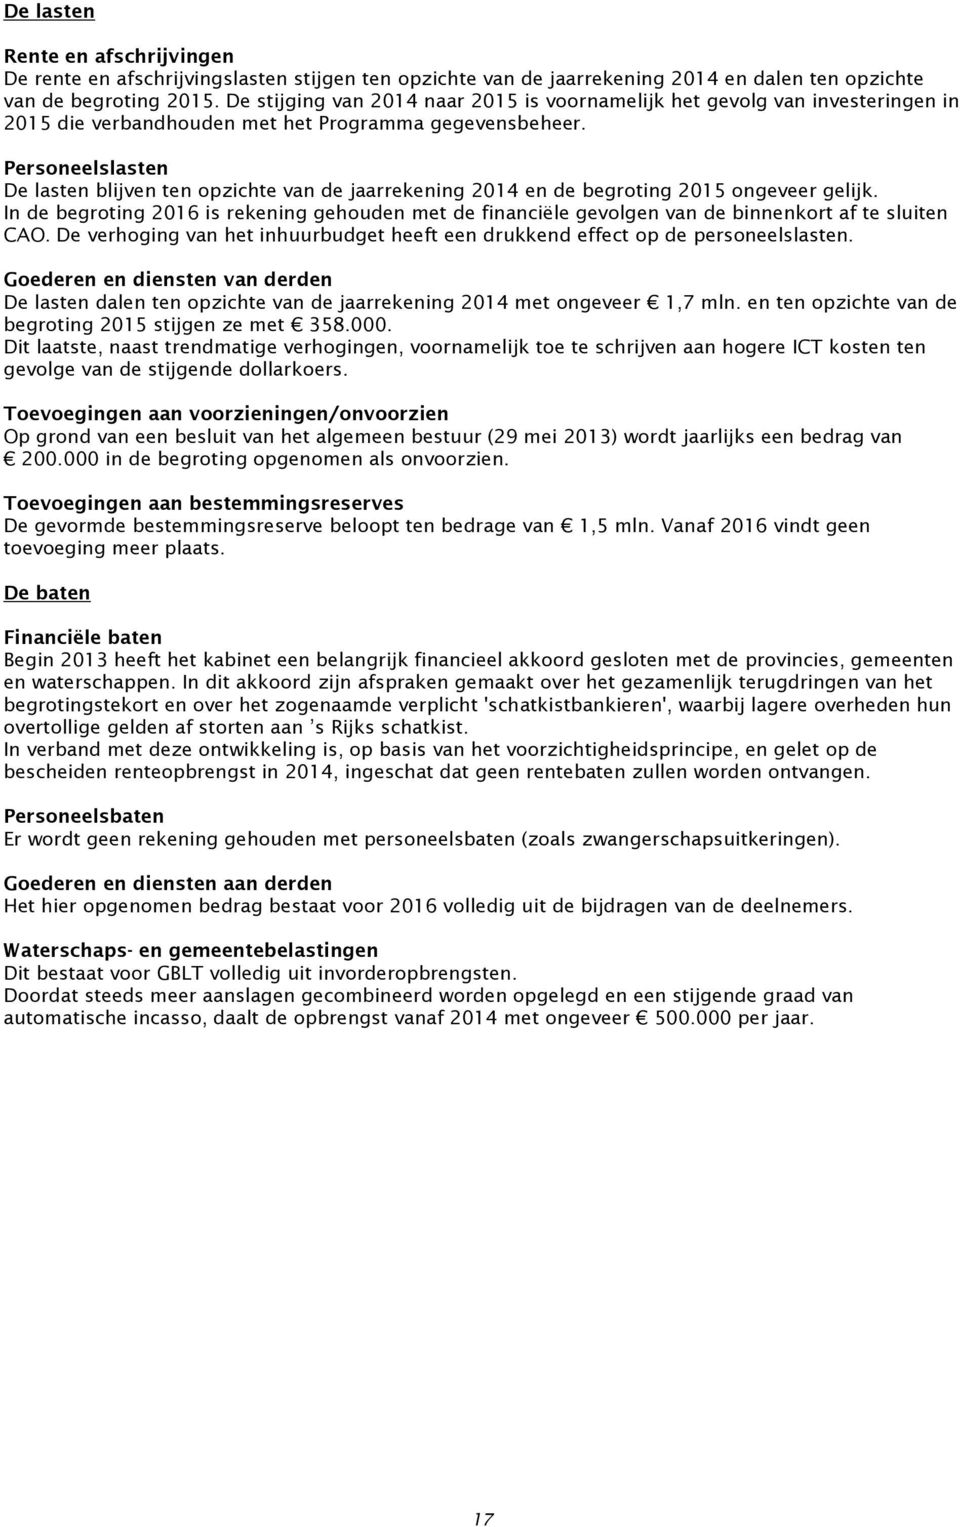 Personeelslasten De lasten blijven ten opzichte van de jaarrekening 2014 en de begroting 2015 ongeveer gelijk.